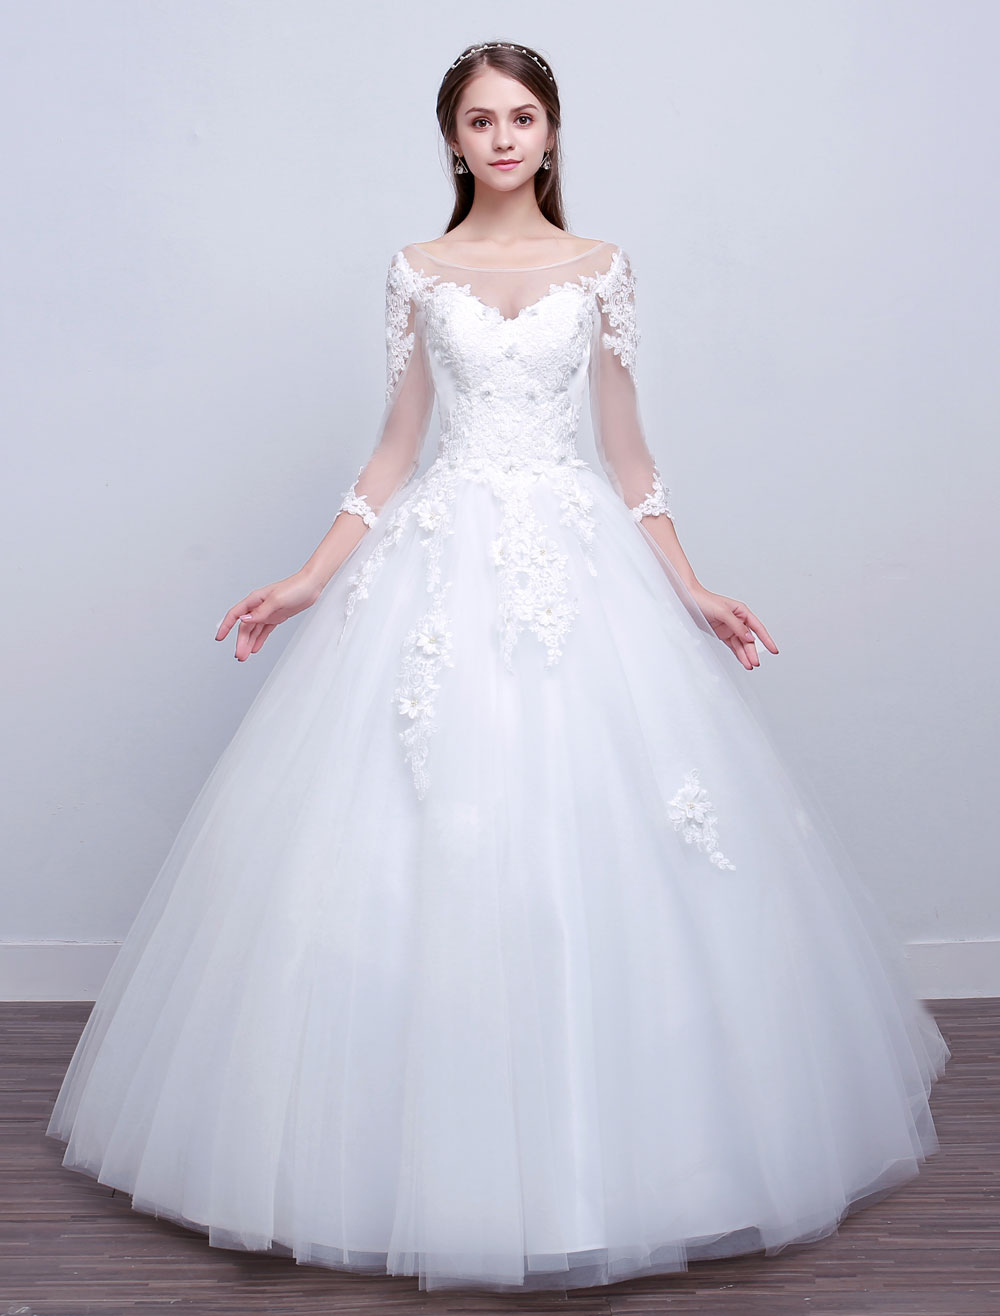 Női hercegnő stílusú esküvői ruha (A Ft ár tájékoztató jellegű)